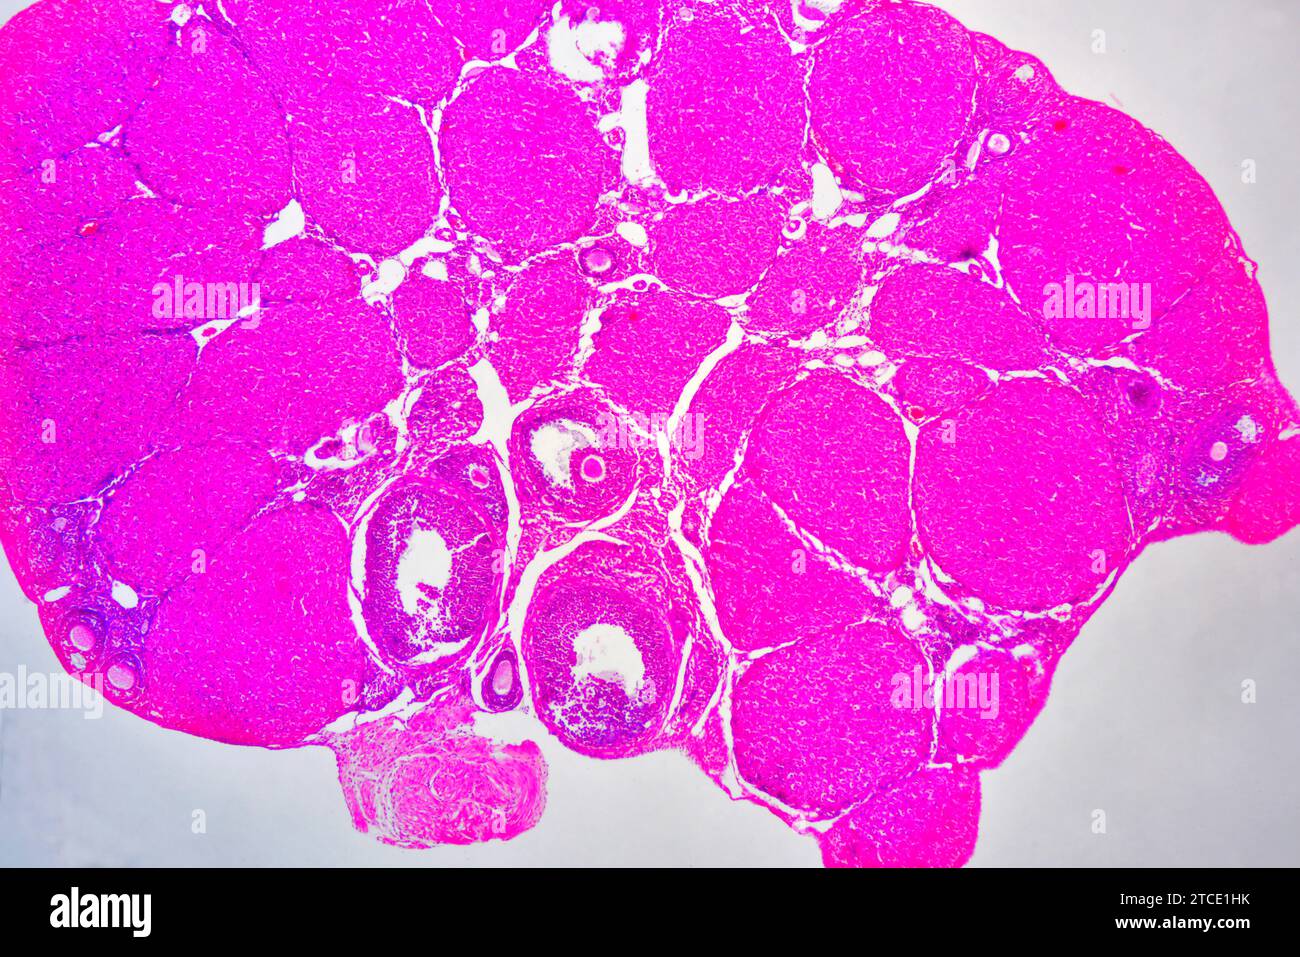 Sezione ovarica che mostra corpus luteum, stroma, epitelio e follicoli. Microscopio ottico X40. Foto Stock